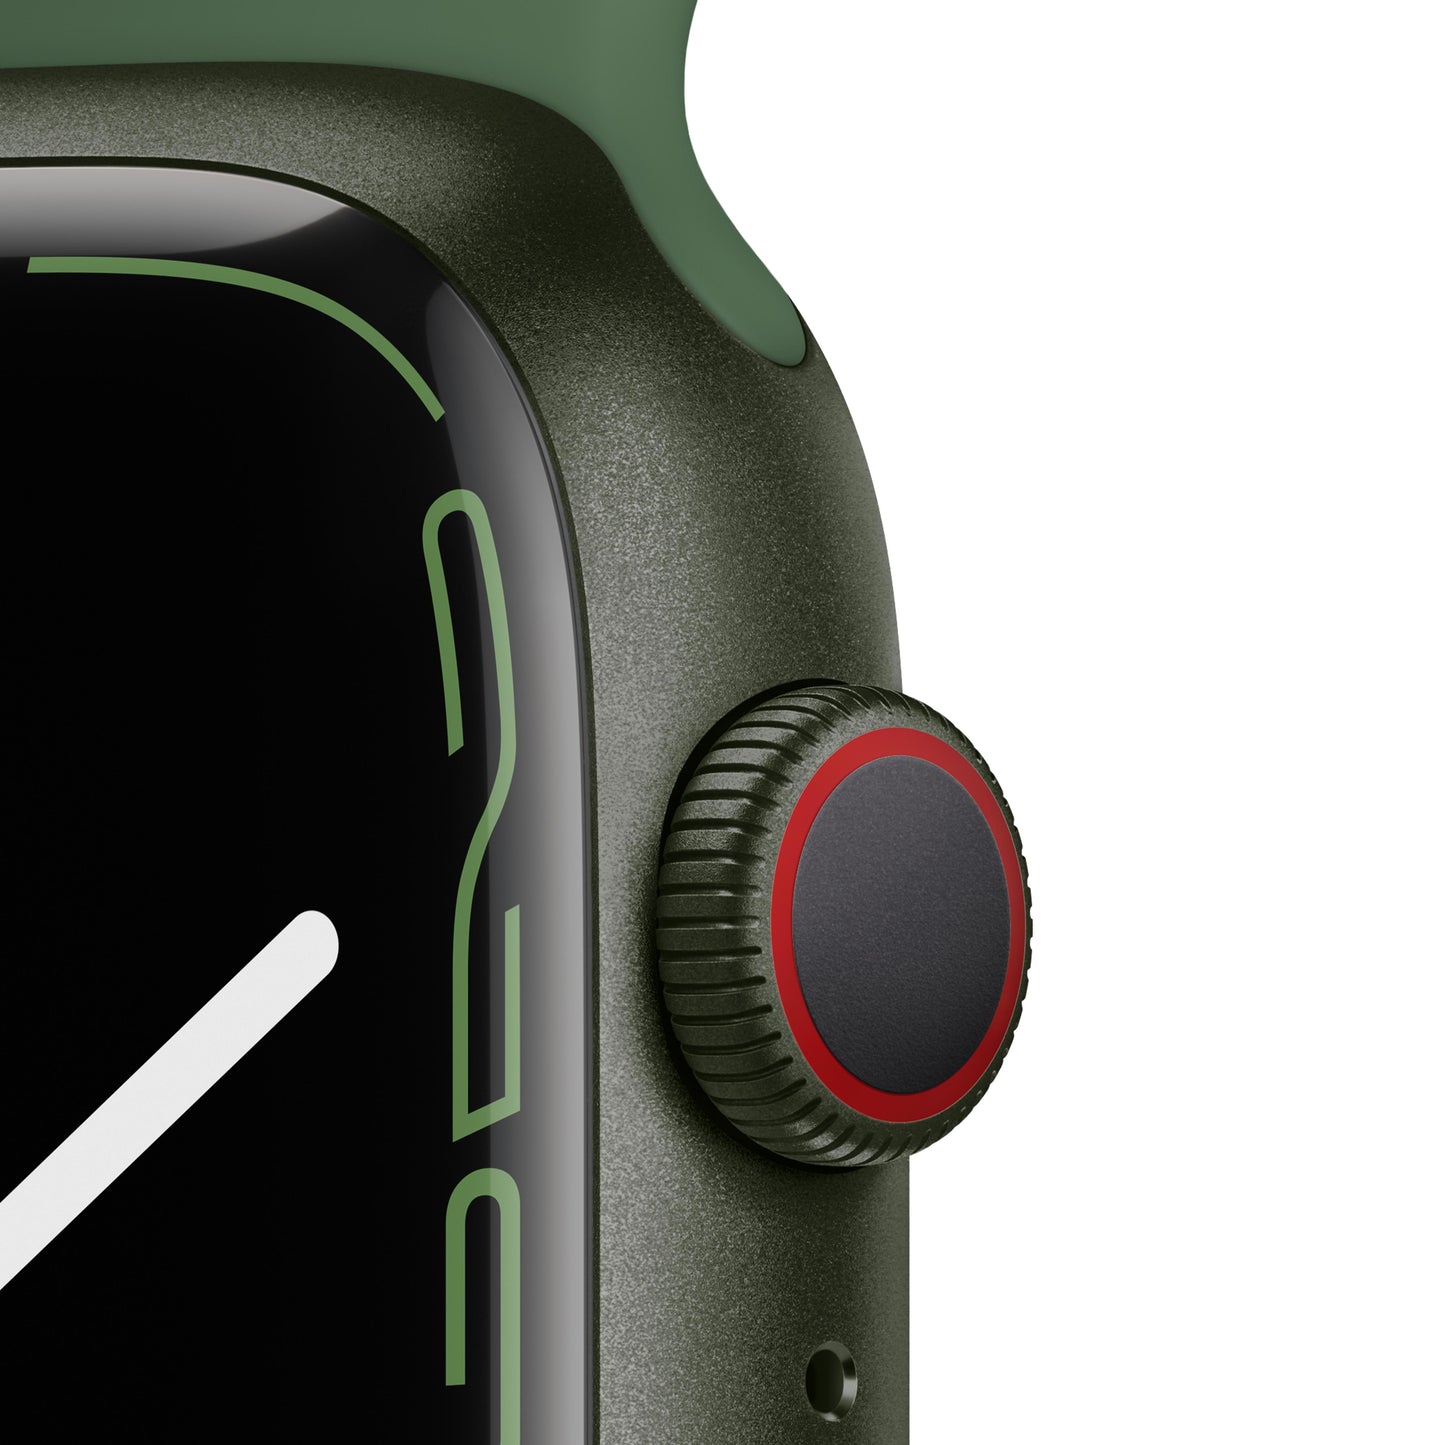 Apple Watch Series 7 GPS + Cellular, 45mm Green Aluminium Case with Clover Sport Band - Regular